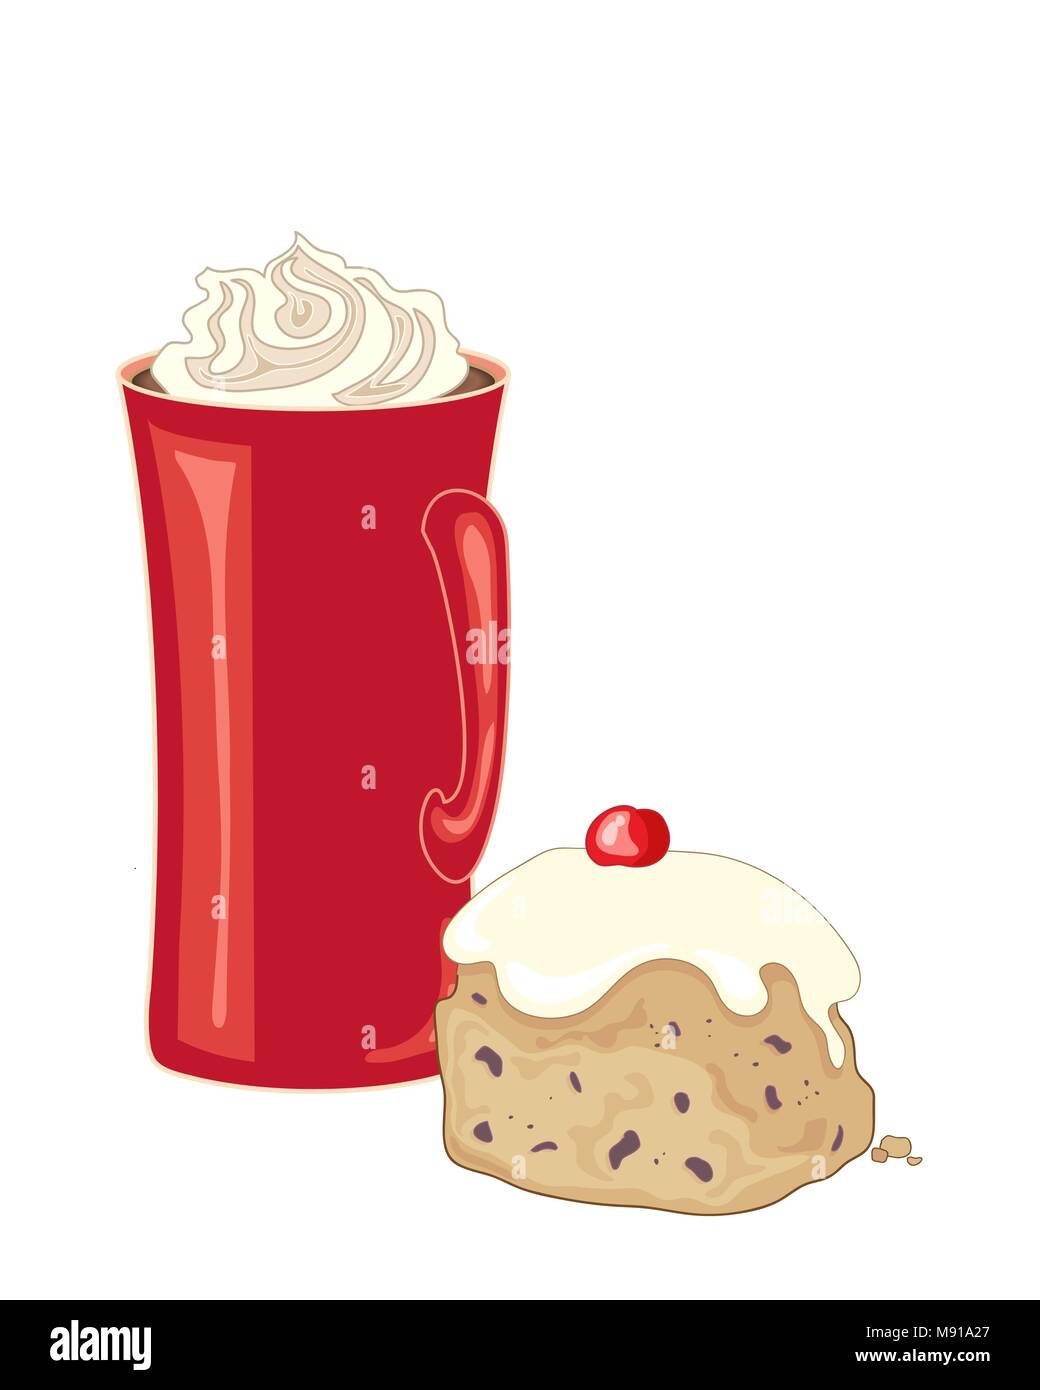 Un vecteur illustration en eps 10 rouge format d'une grande tasse de café avec de la crème fouettée mise à côté d'un petit pain glacé avec décoration cerise Illustration de Vecteur